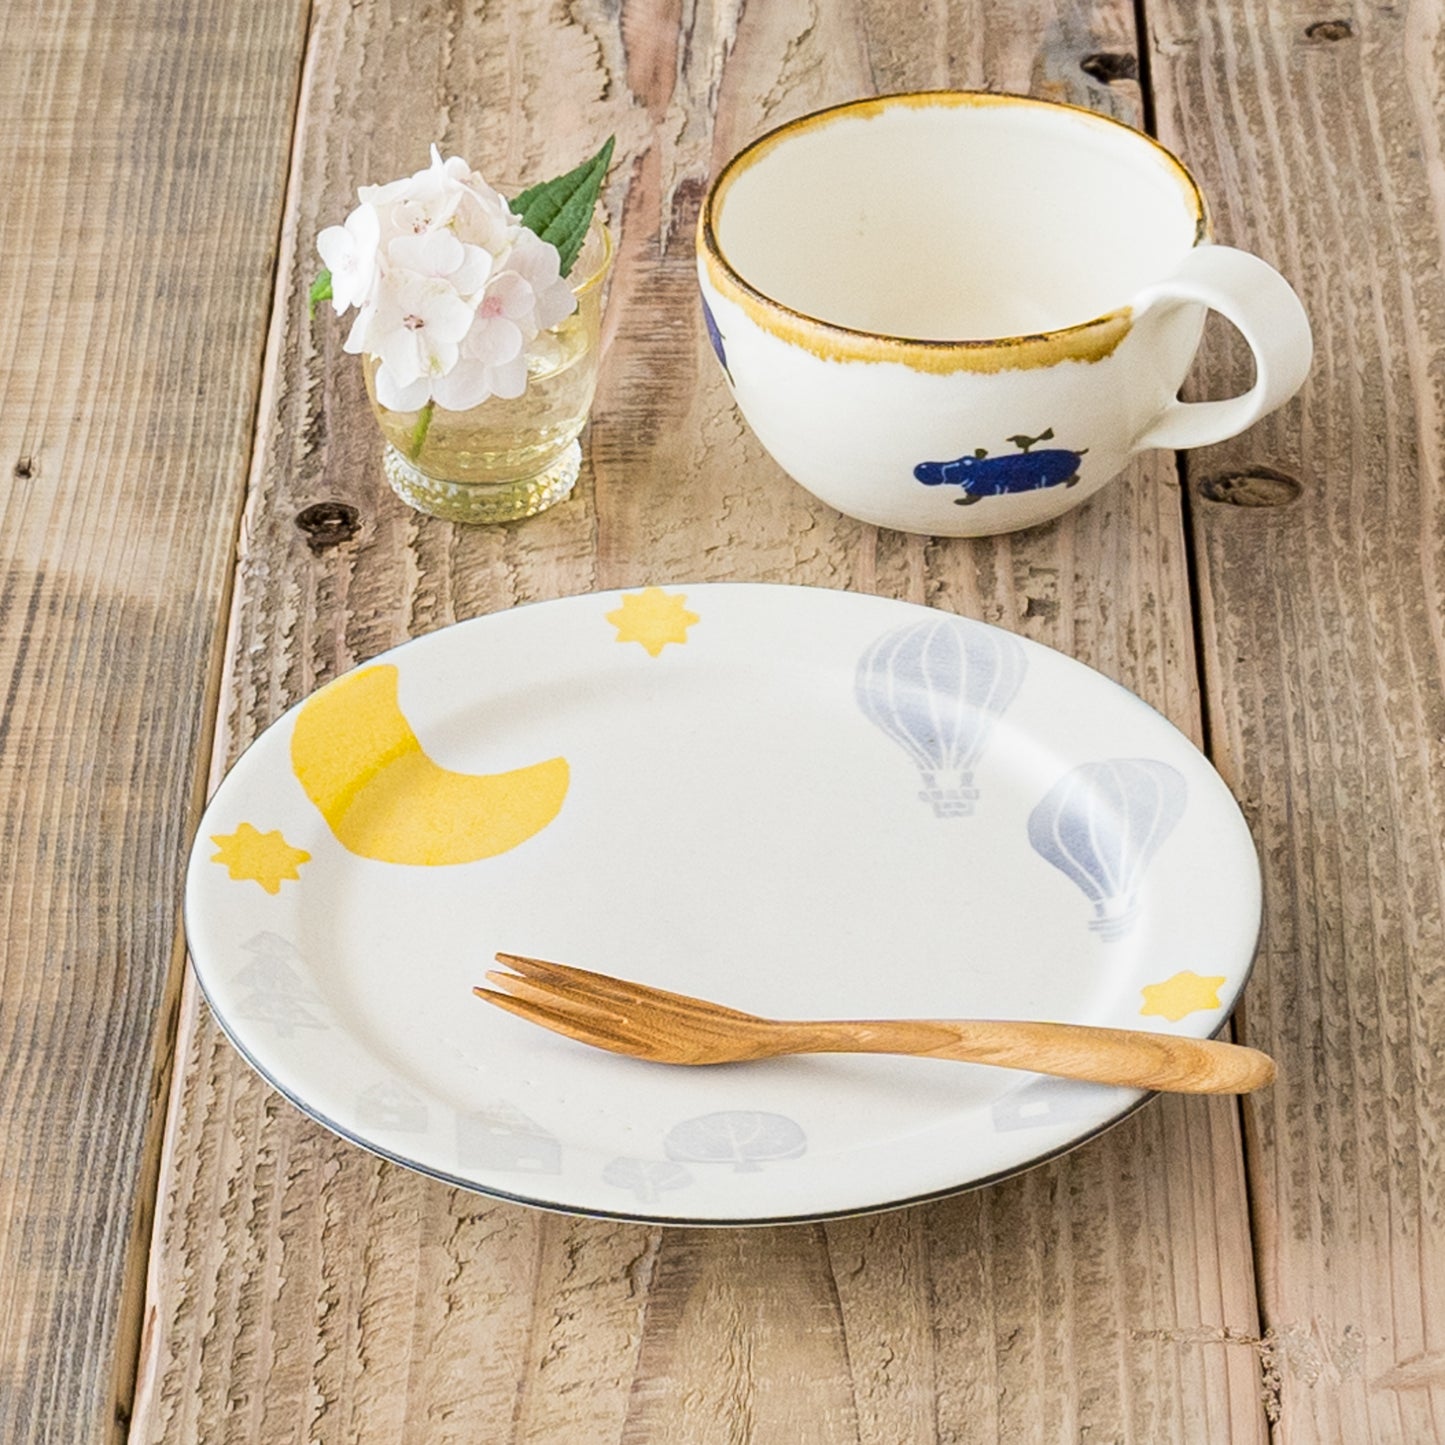 食卓を可愛く彩ってくれる安見工房の和紙染めの6寸リム皿と丸マグ